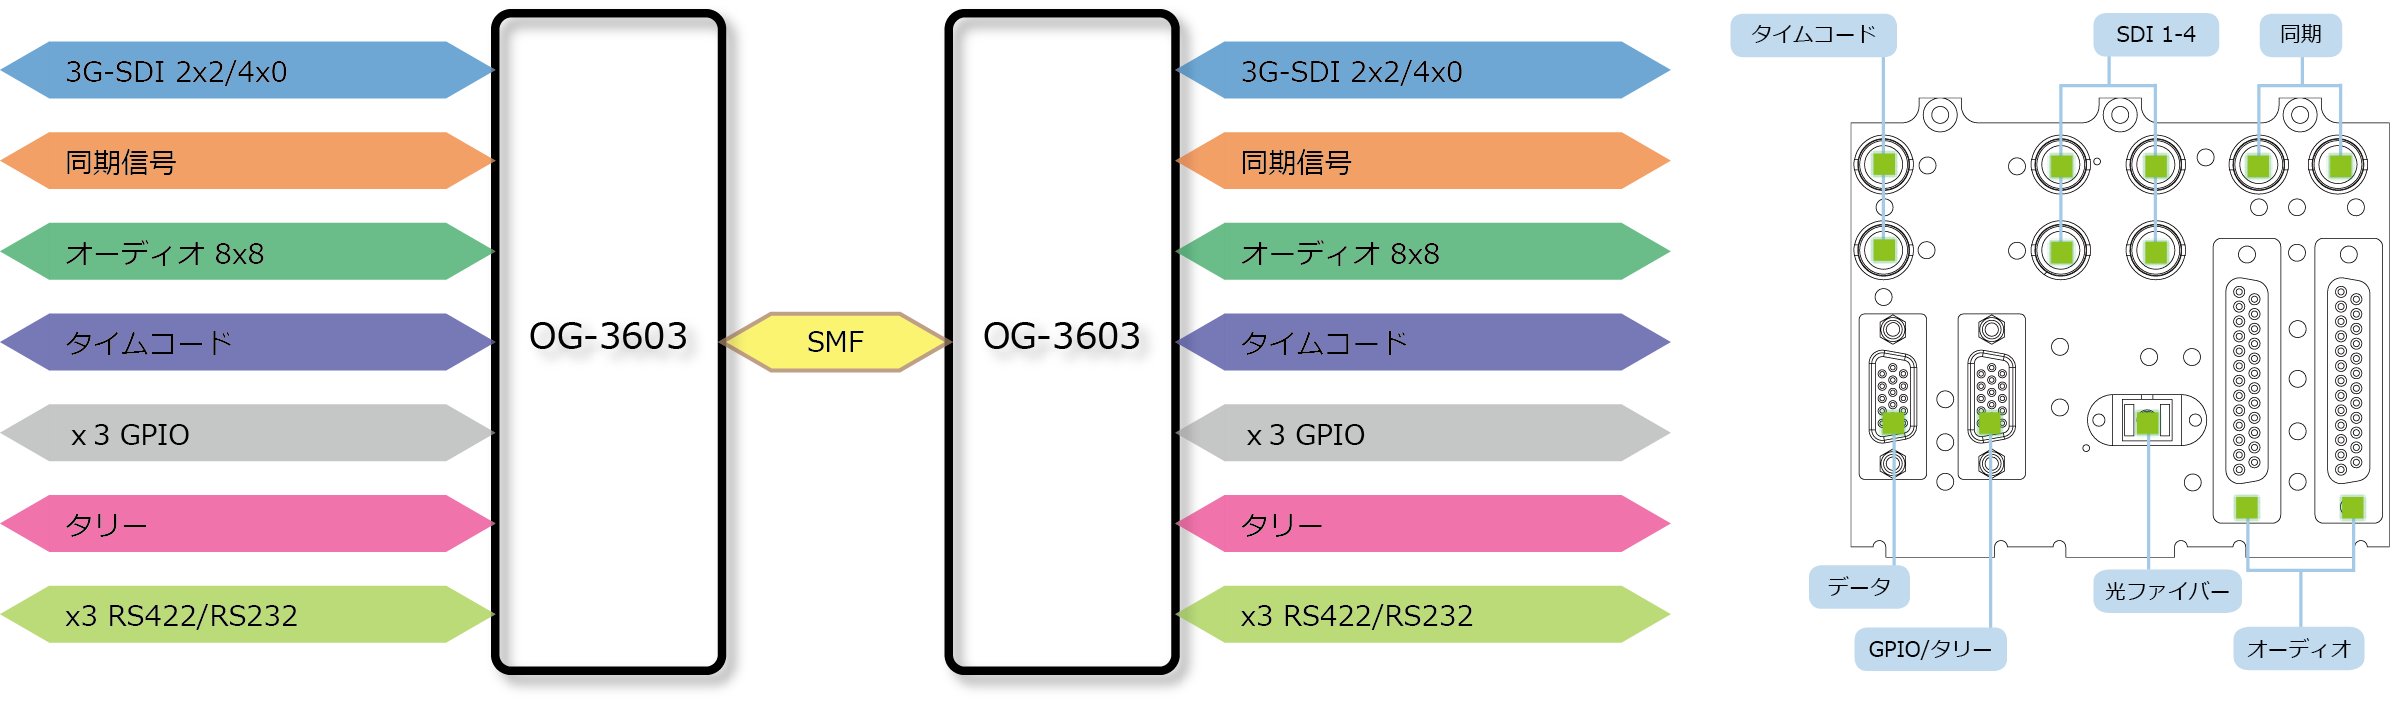 OG-3603 ブロック図/リアパネル図